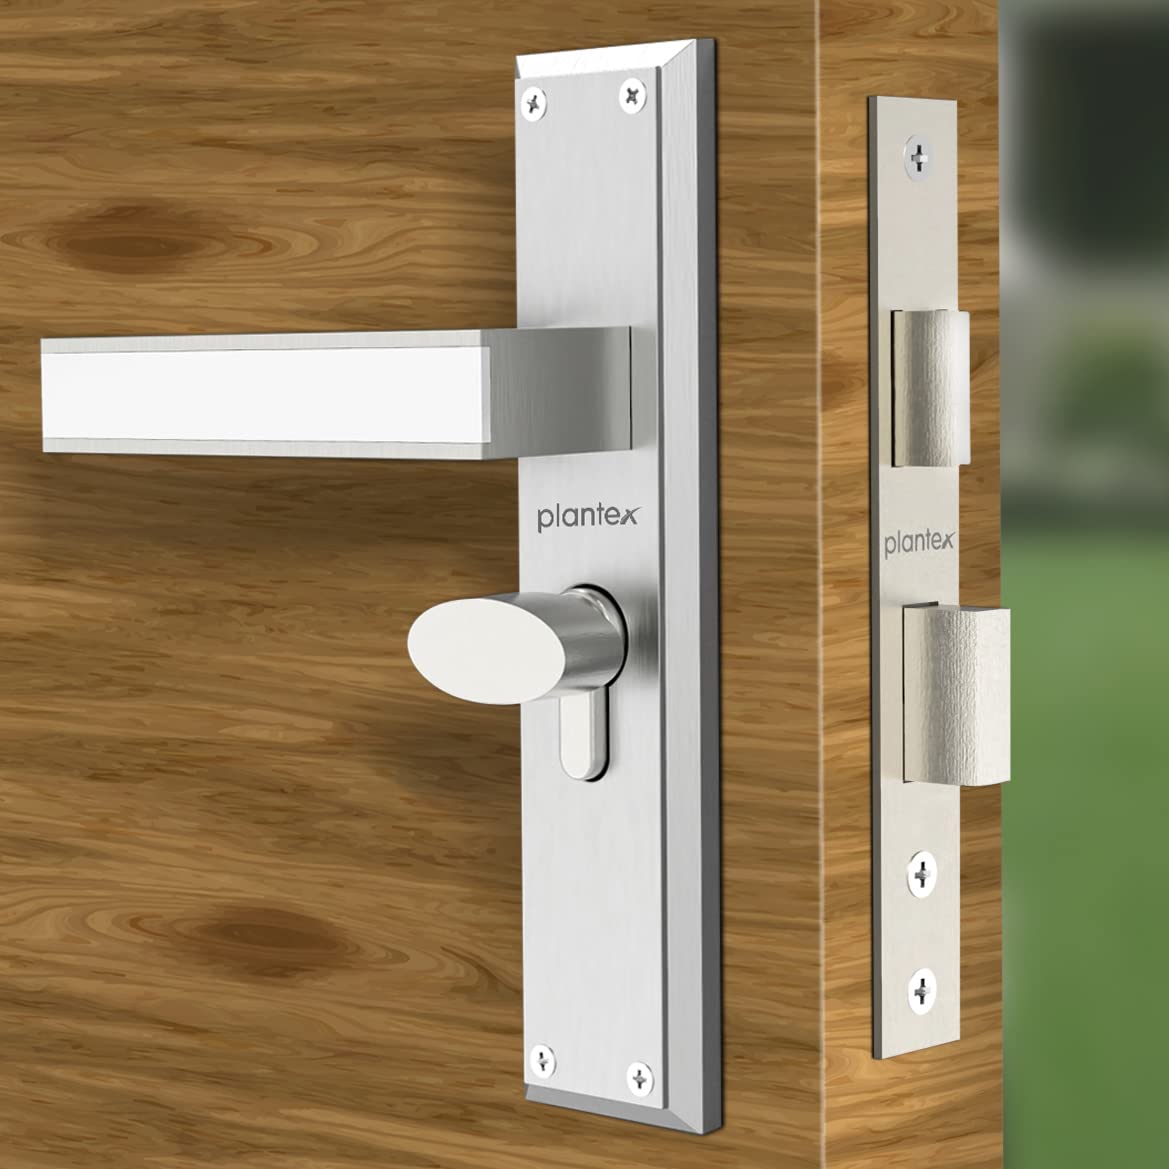 Plantex Heavy Duty Door Lock - Main Door Lock Set with 3 Keys/Mortise Door Lock for Home/Office/Hotel (8081 - Chrome & Matt)